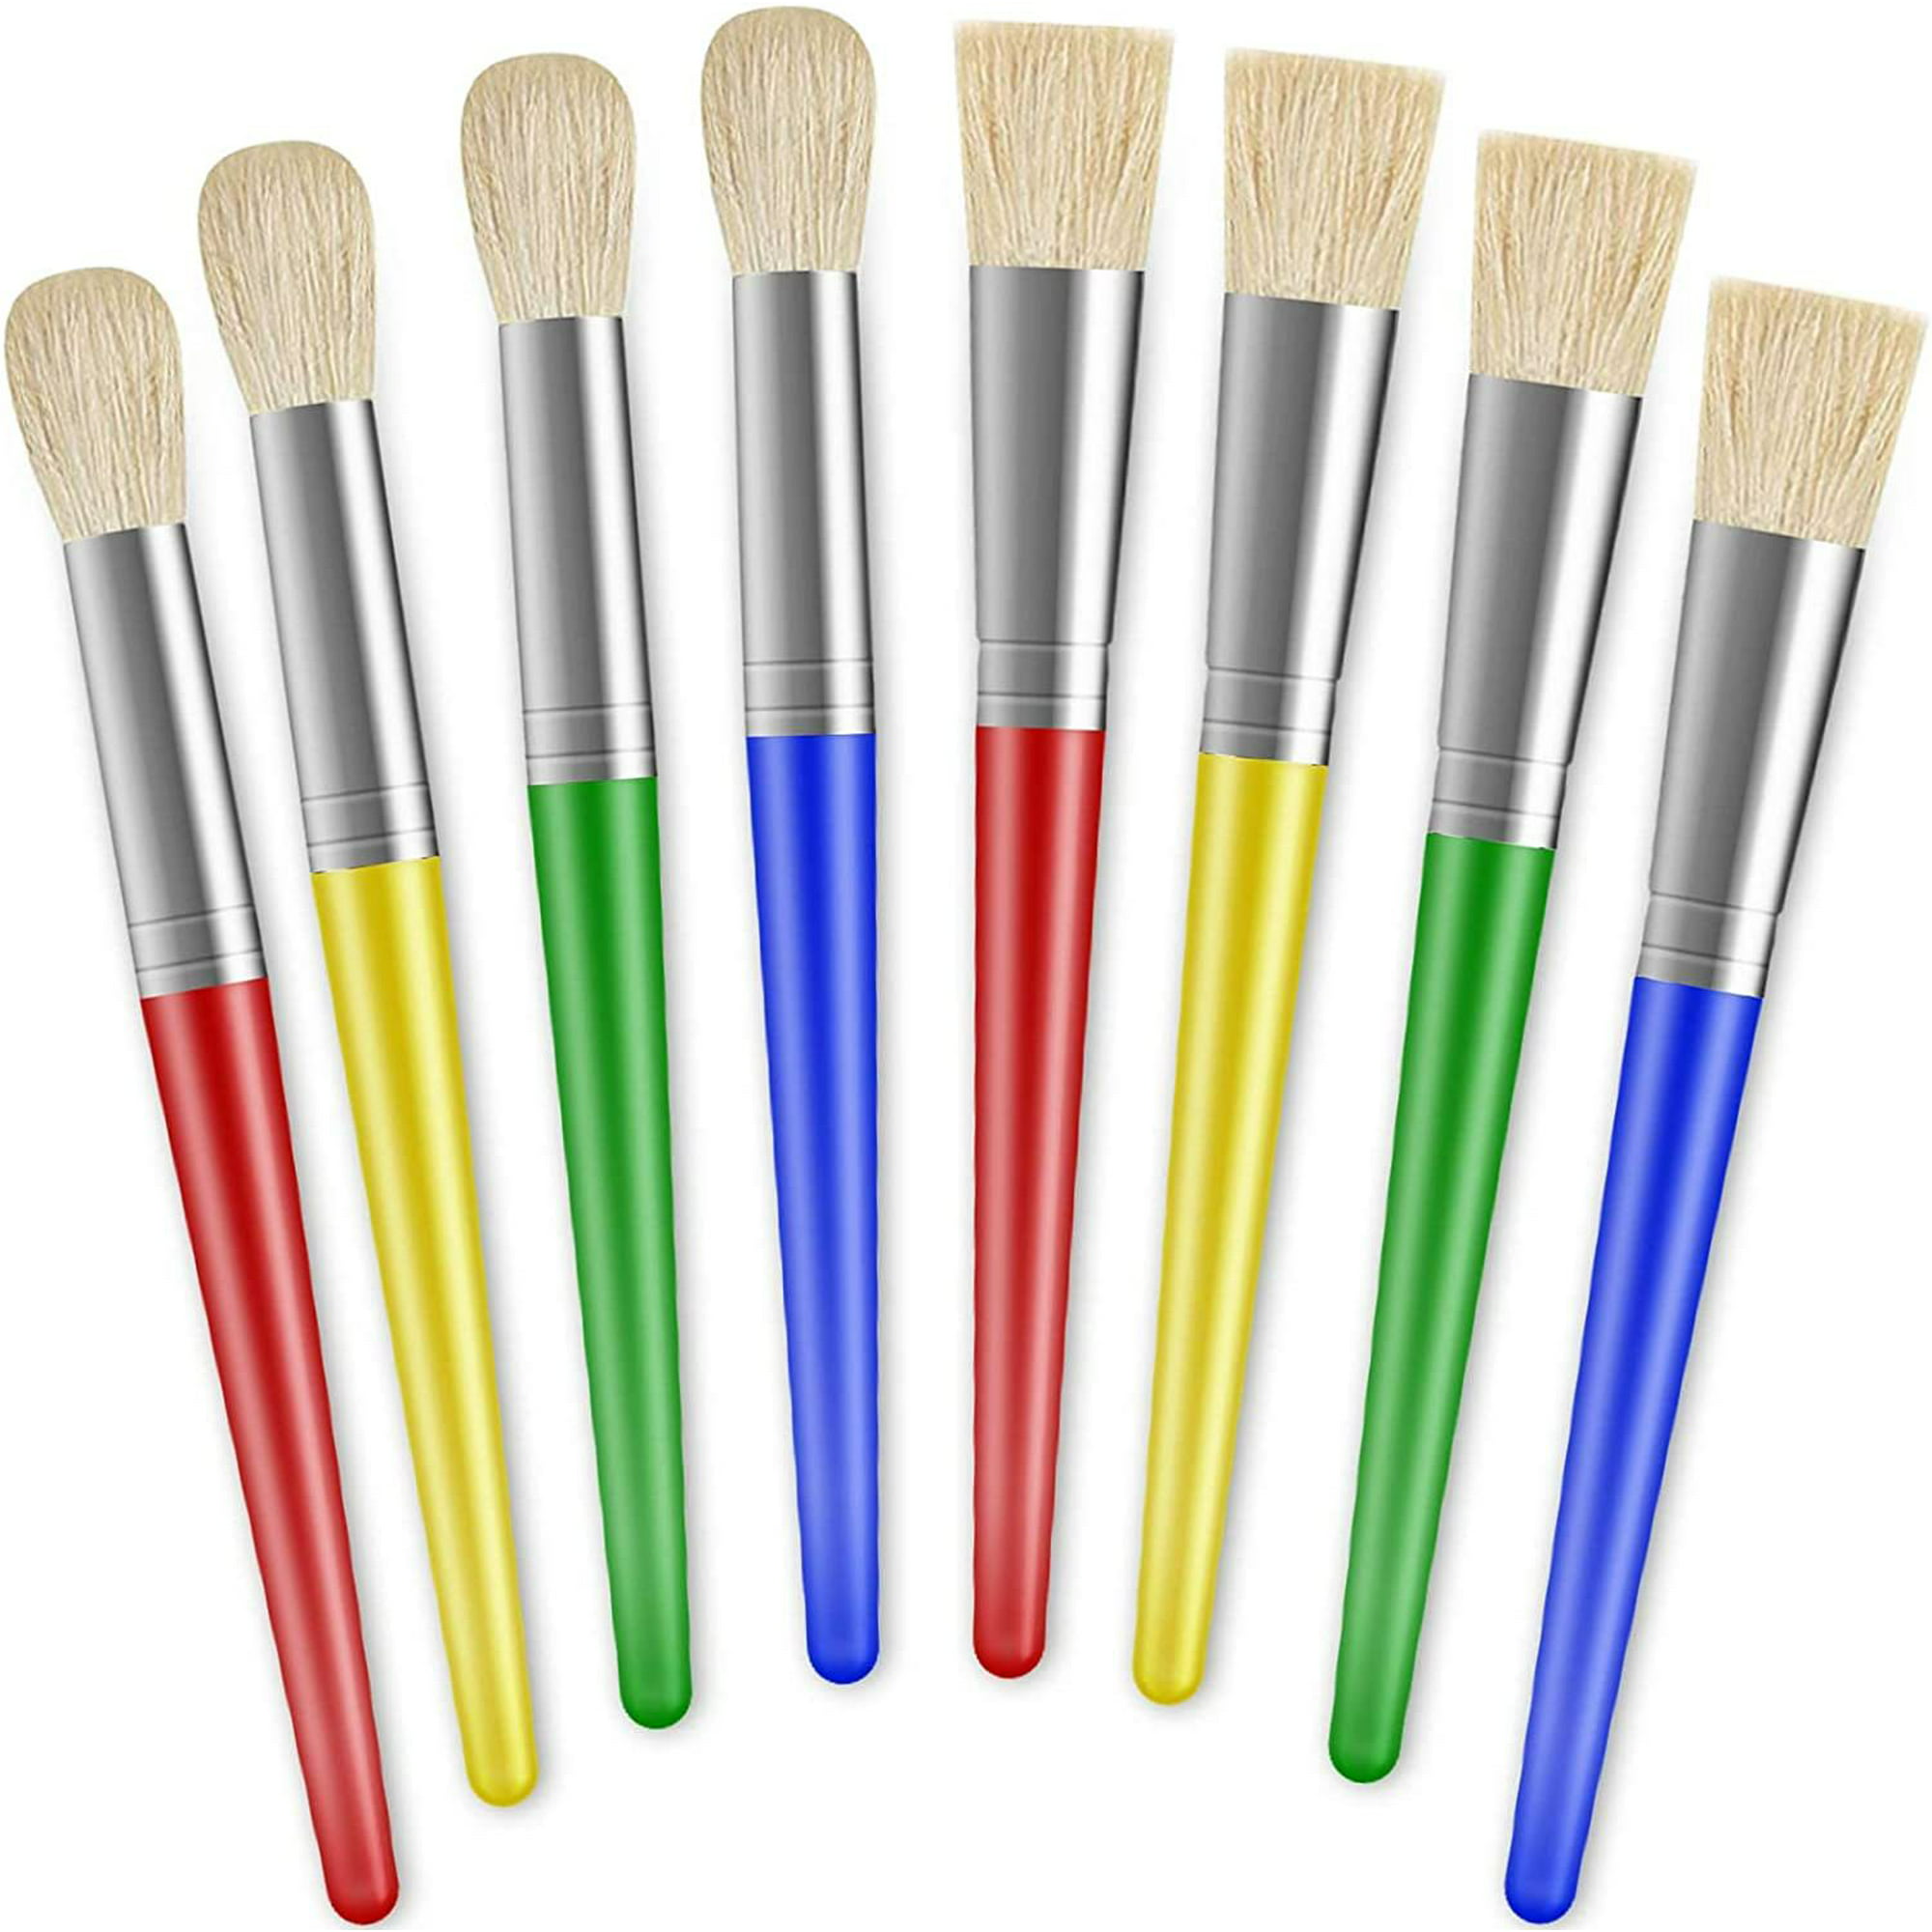 Operitacx 20 pinceles de pintura lavables y gorditos para niños Jumbo  pinceles planos de pintura preescolar para pintura acrílica al óleo